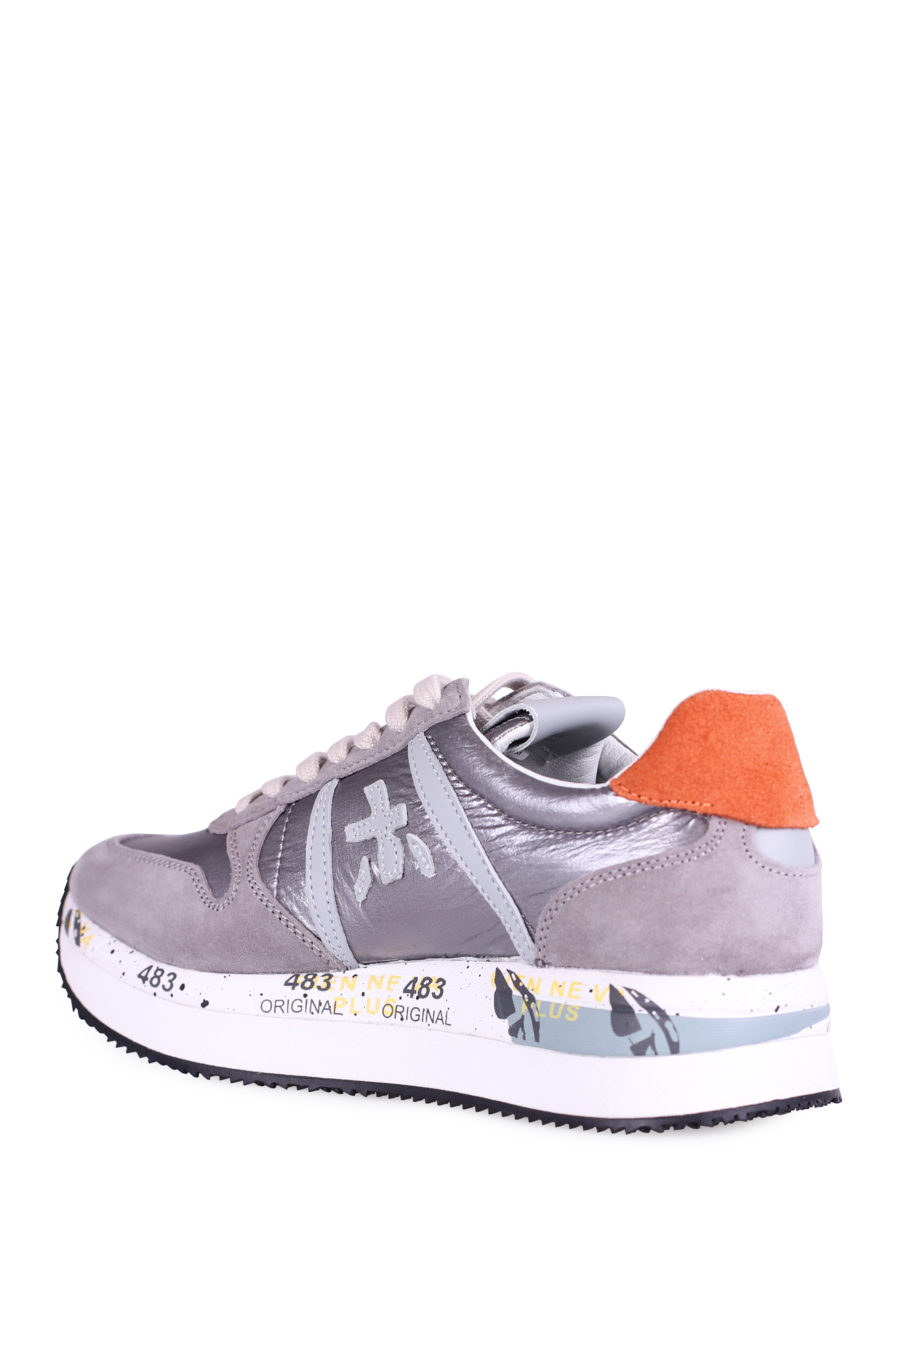 Zapatillas "Tris" gris y plateado - IMG 9977